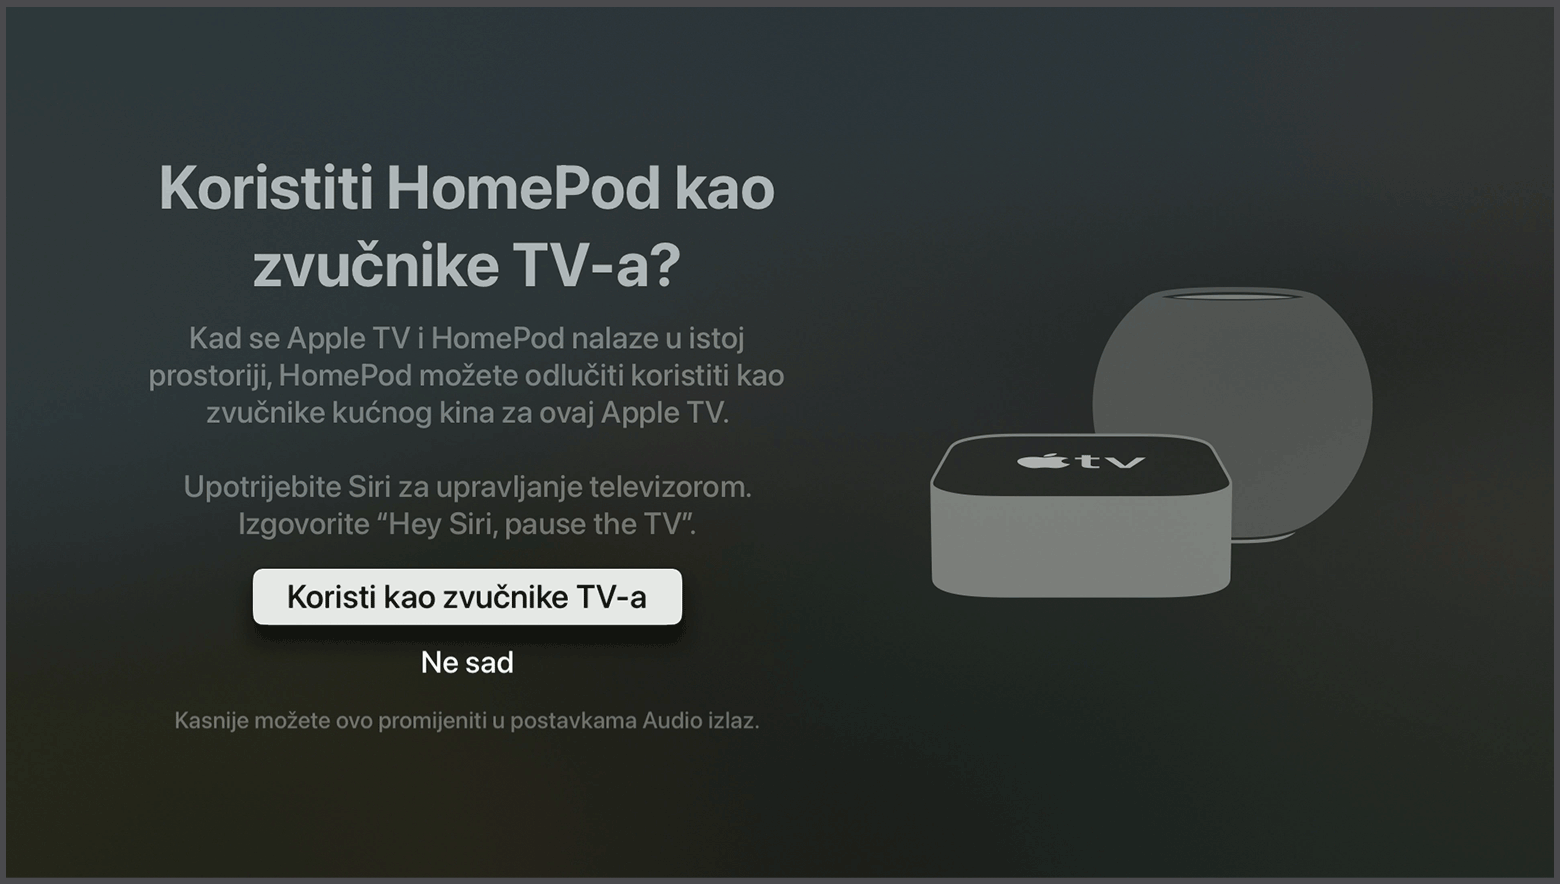 Snimka zaslona sustava tvOS s upitom o korištenju HomePod zvučnika kao zvučnika Apple TV-a